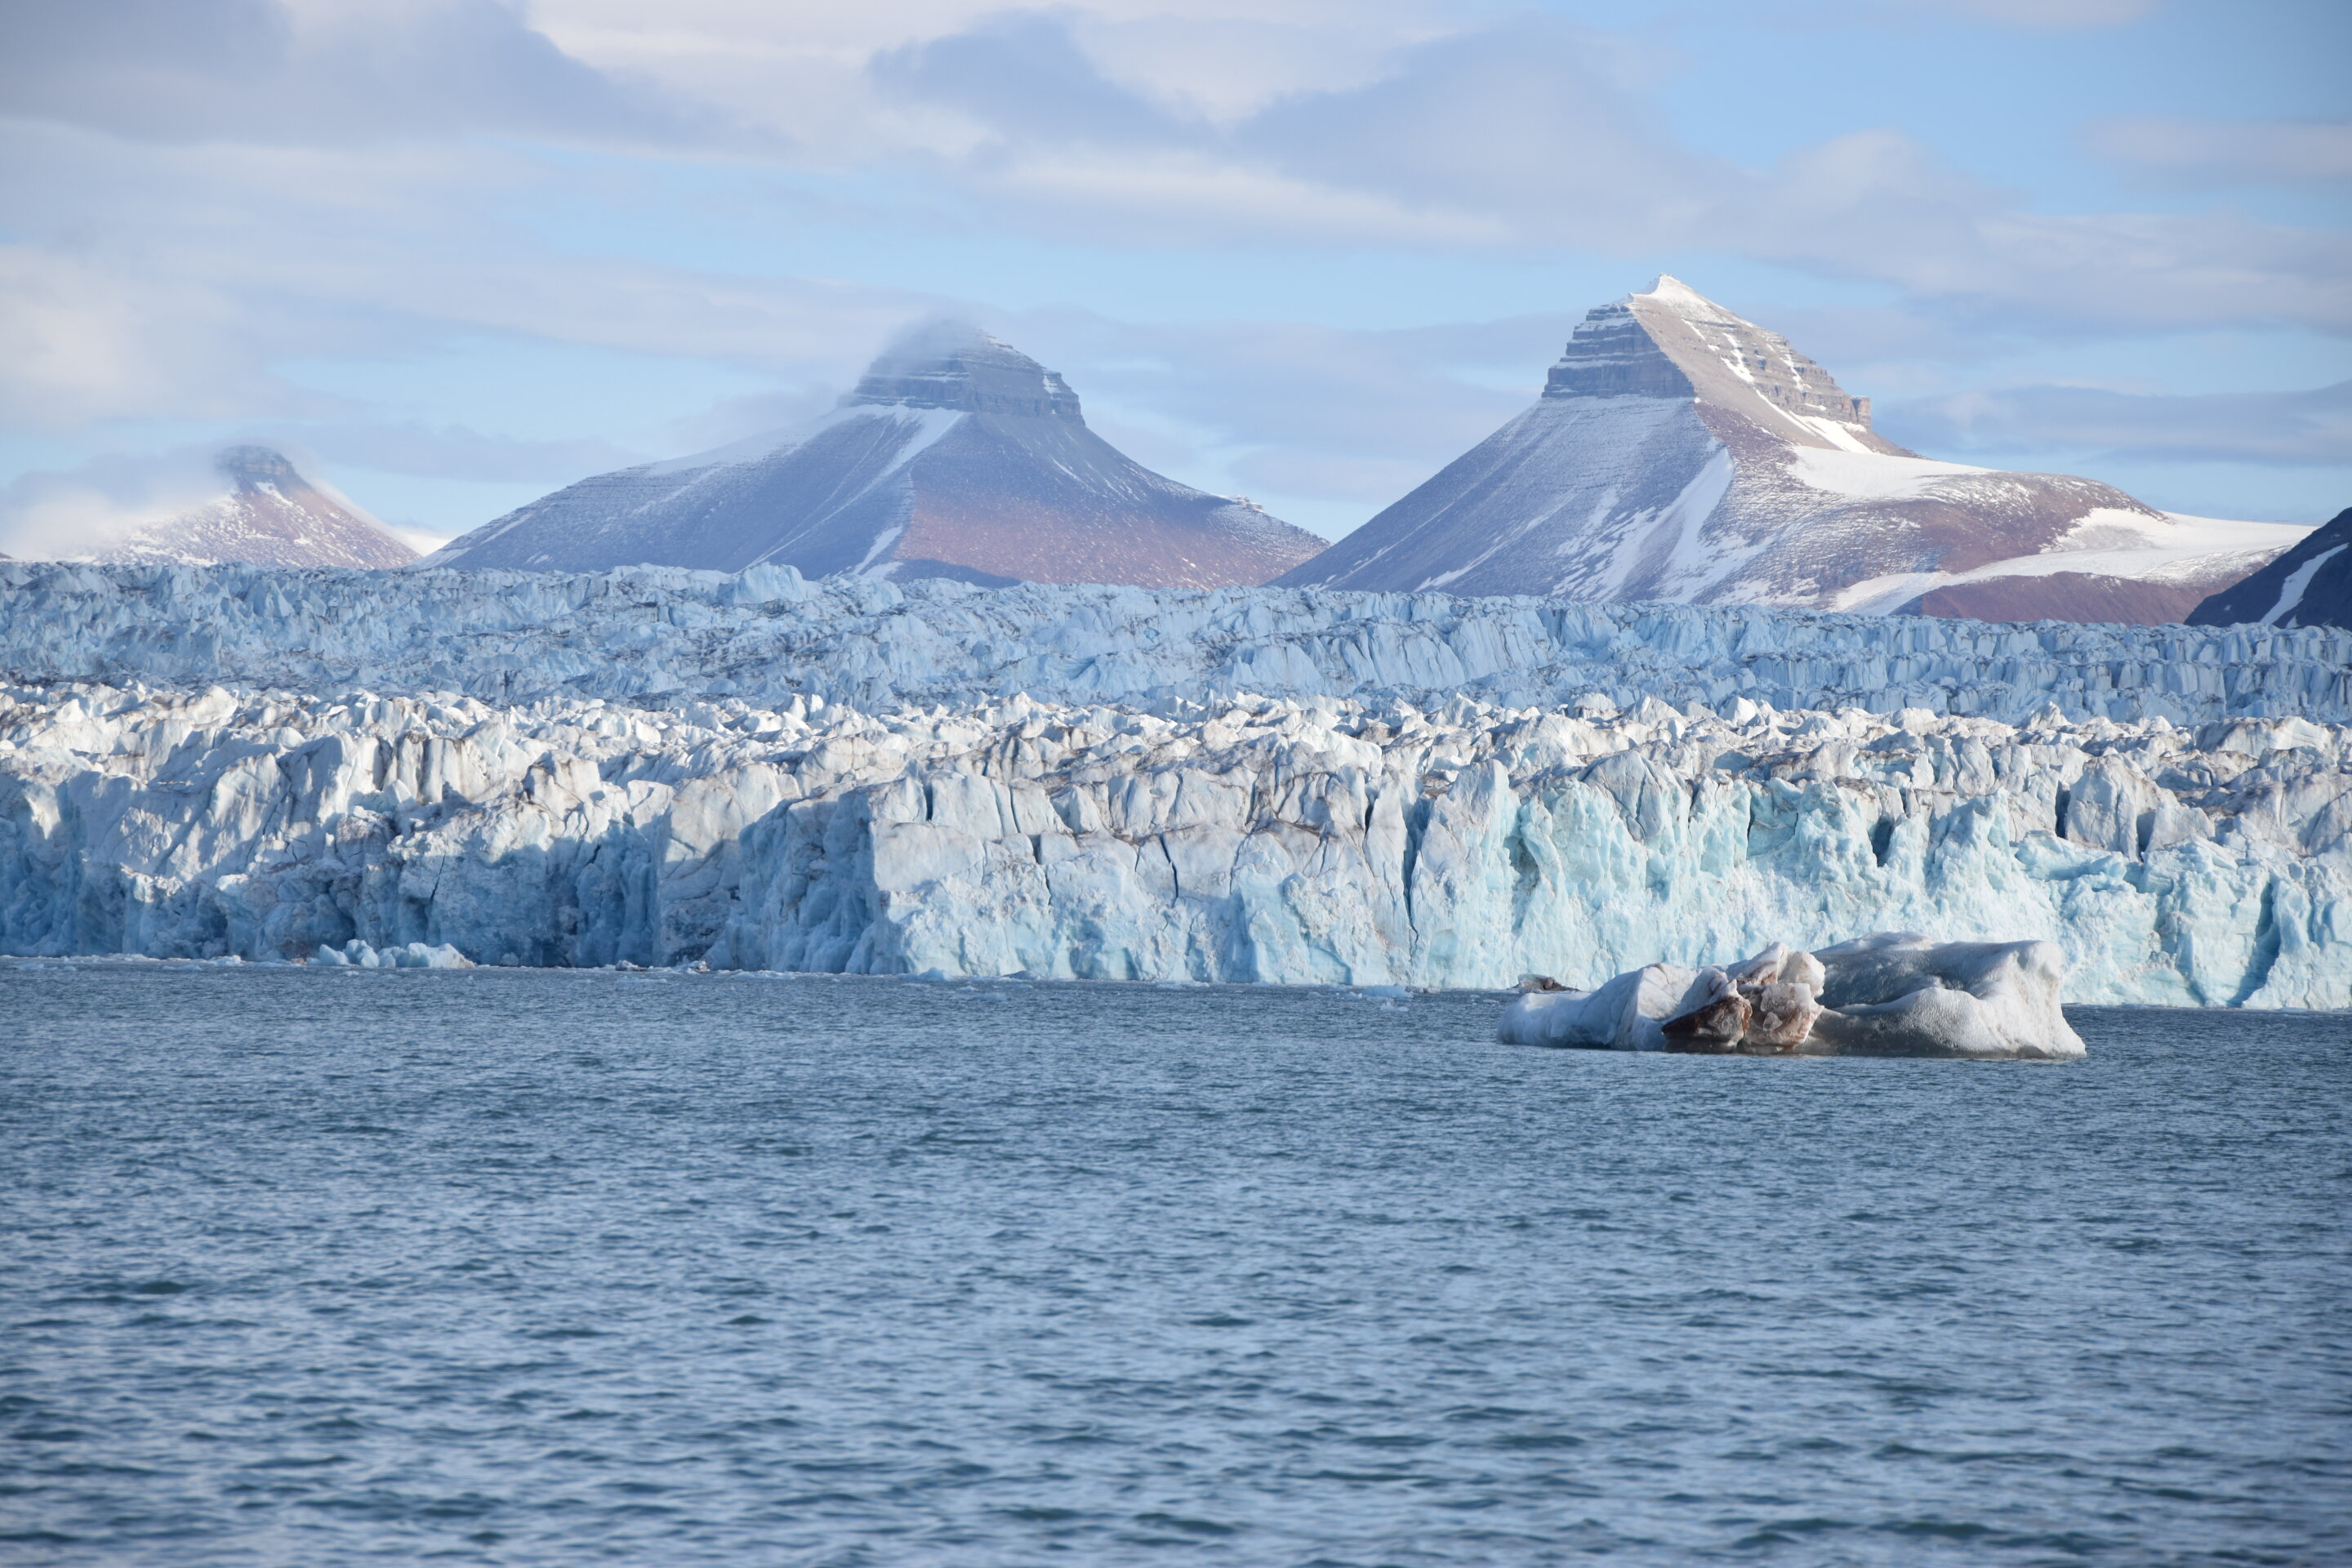 De Noordelijke ijszee begon al op te warmen voordat industriële uitstoot van CO2 een factor kon zijn